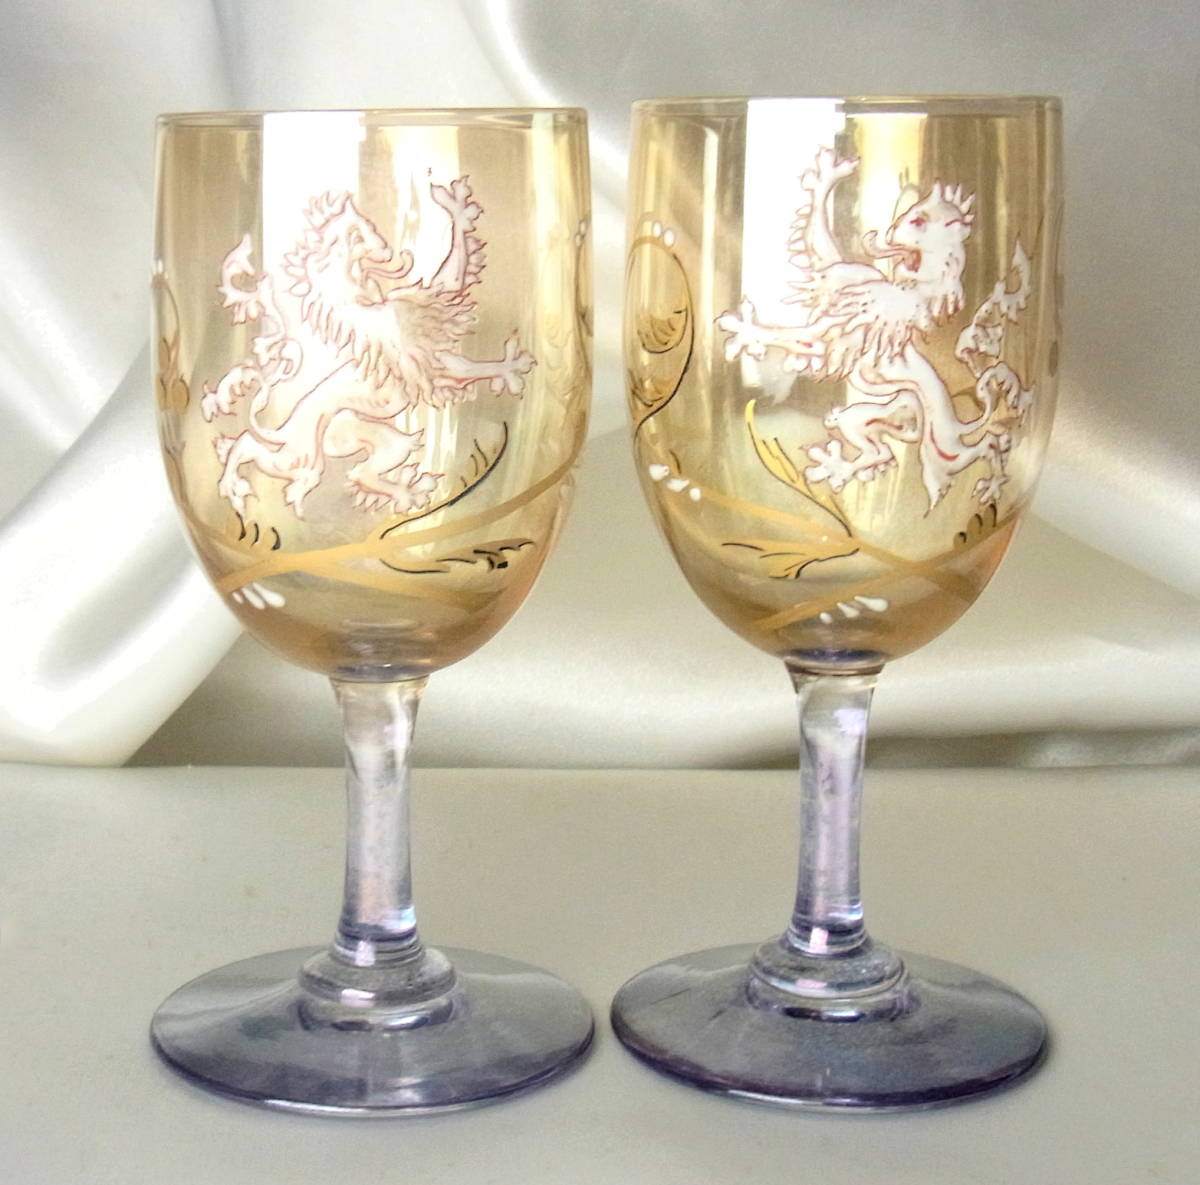 高貴 19世紀 OLD BACCARAT オールドバカラ 獅子の紋章 ワイングラス 相対の2客 ラスター彩 金彩 図録掲載モデル 上質クリスタル 稀少